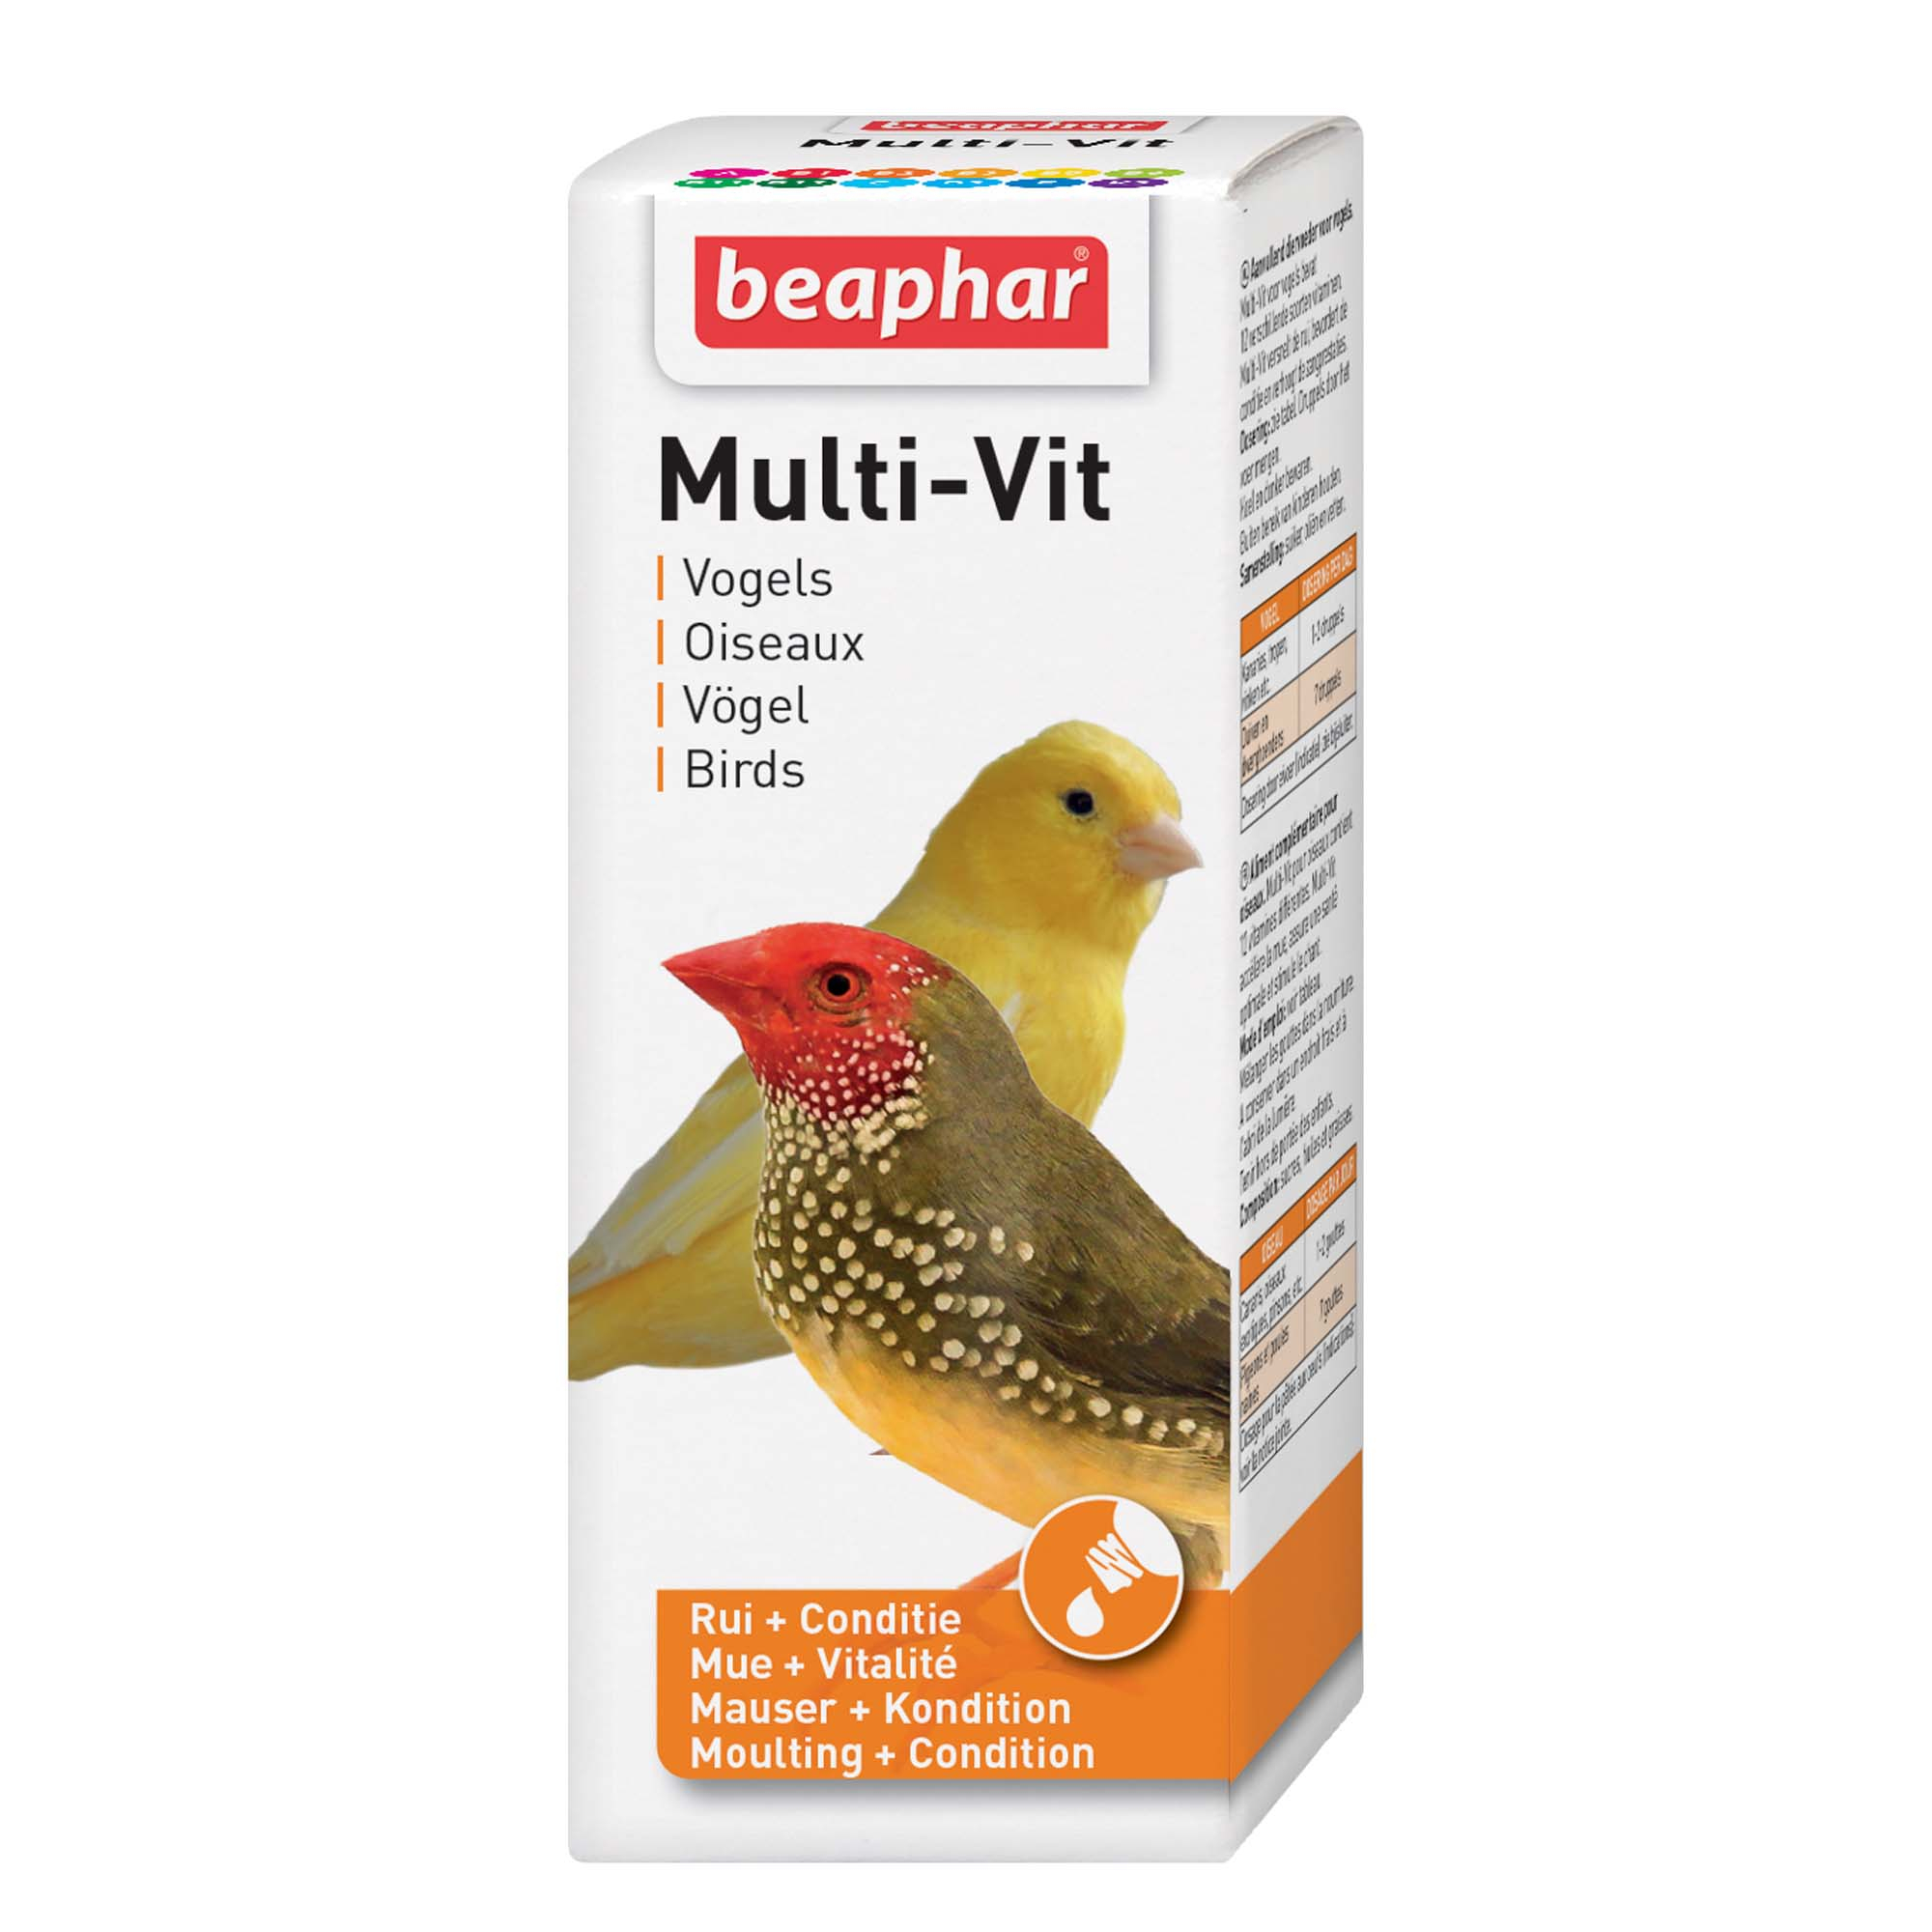 Multi-vit, vitaminas para pássaros